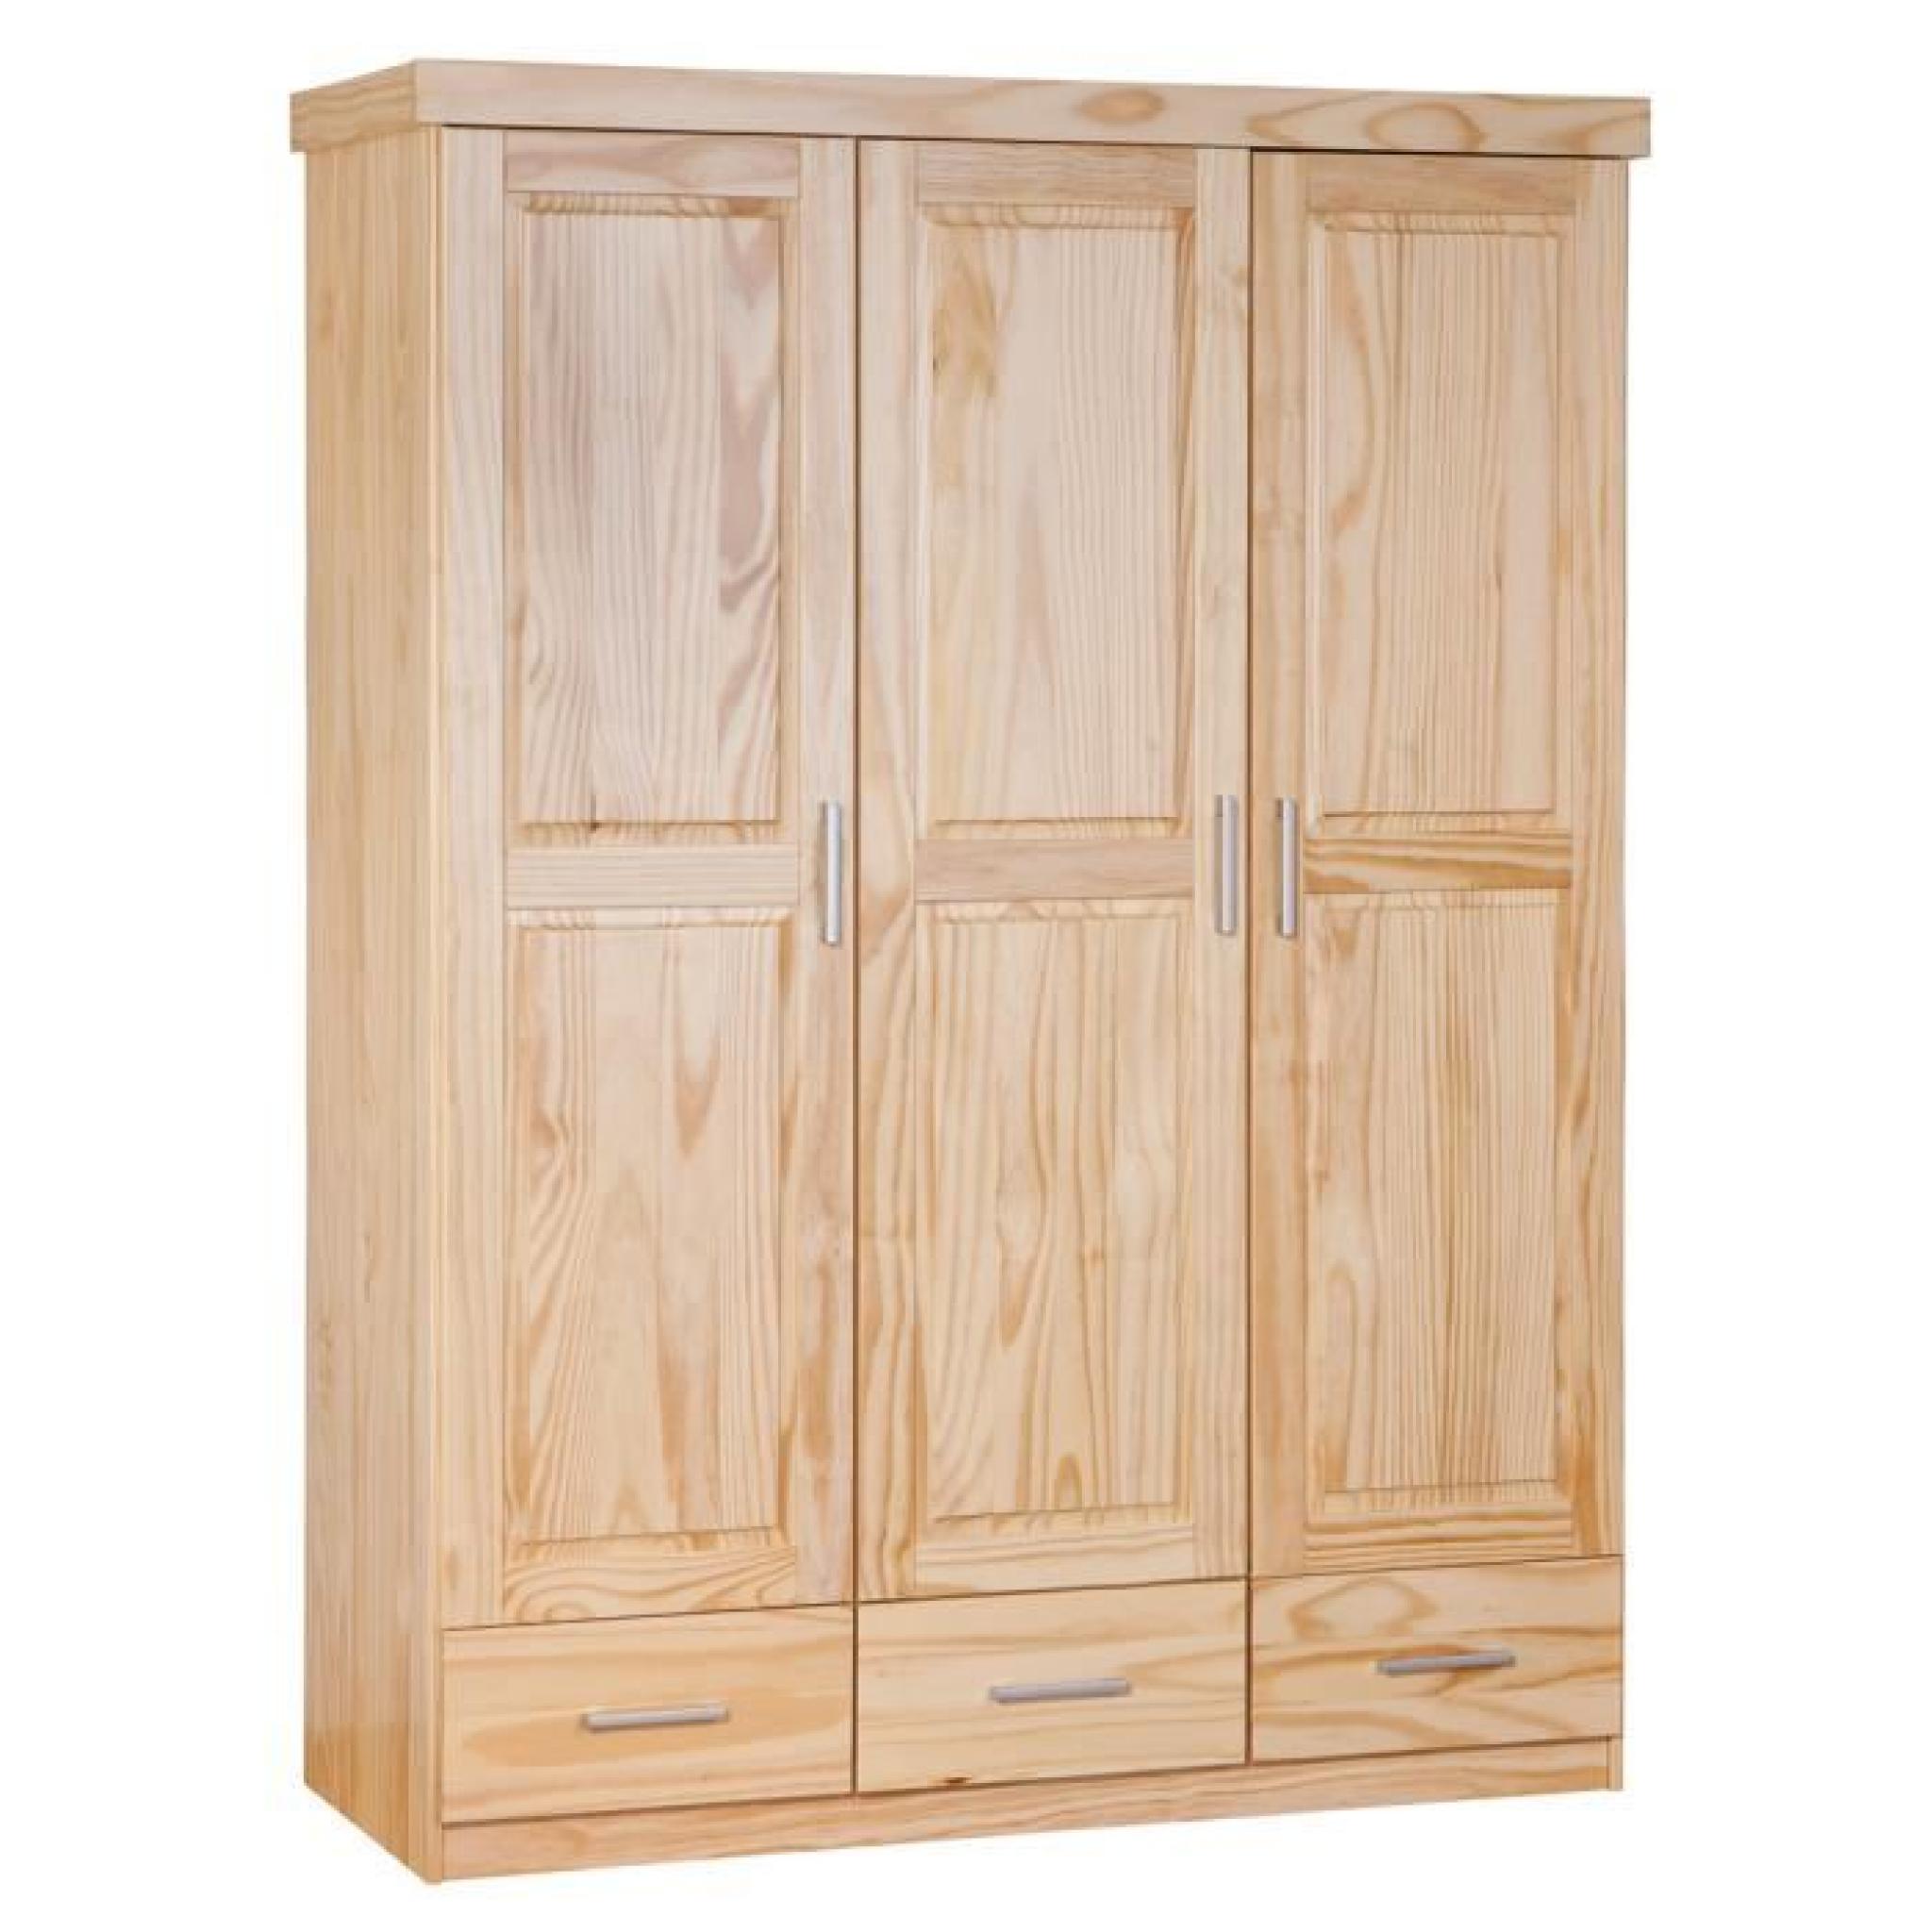 Armoire en bois massif 3 portes et tiroirs pas cher